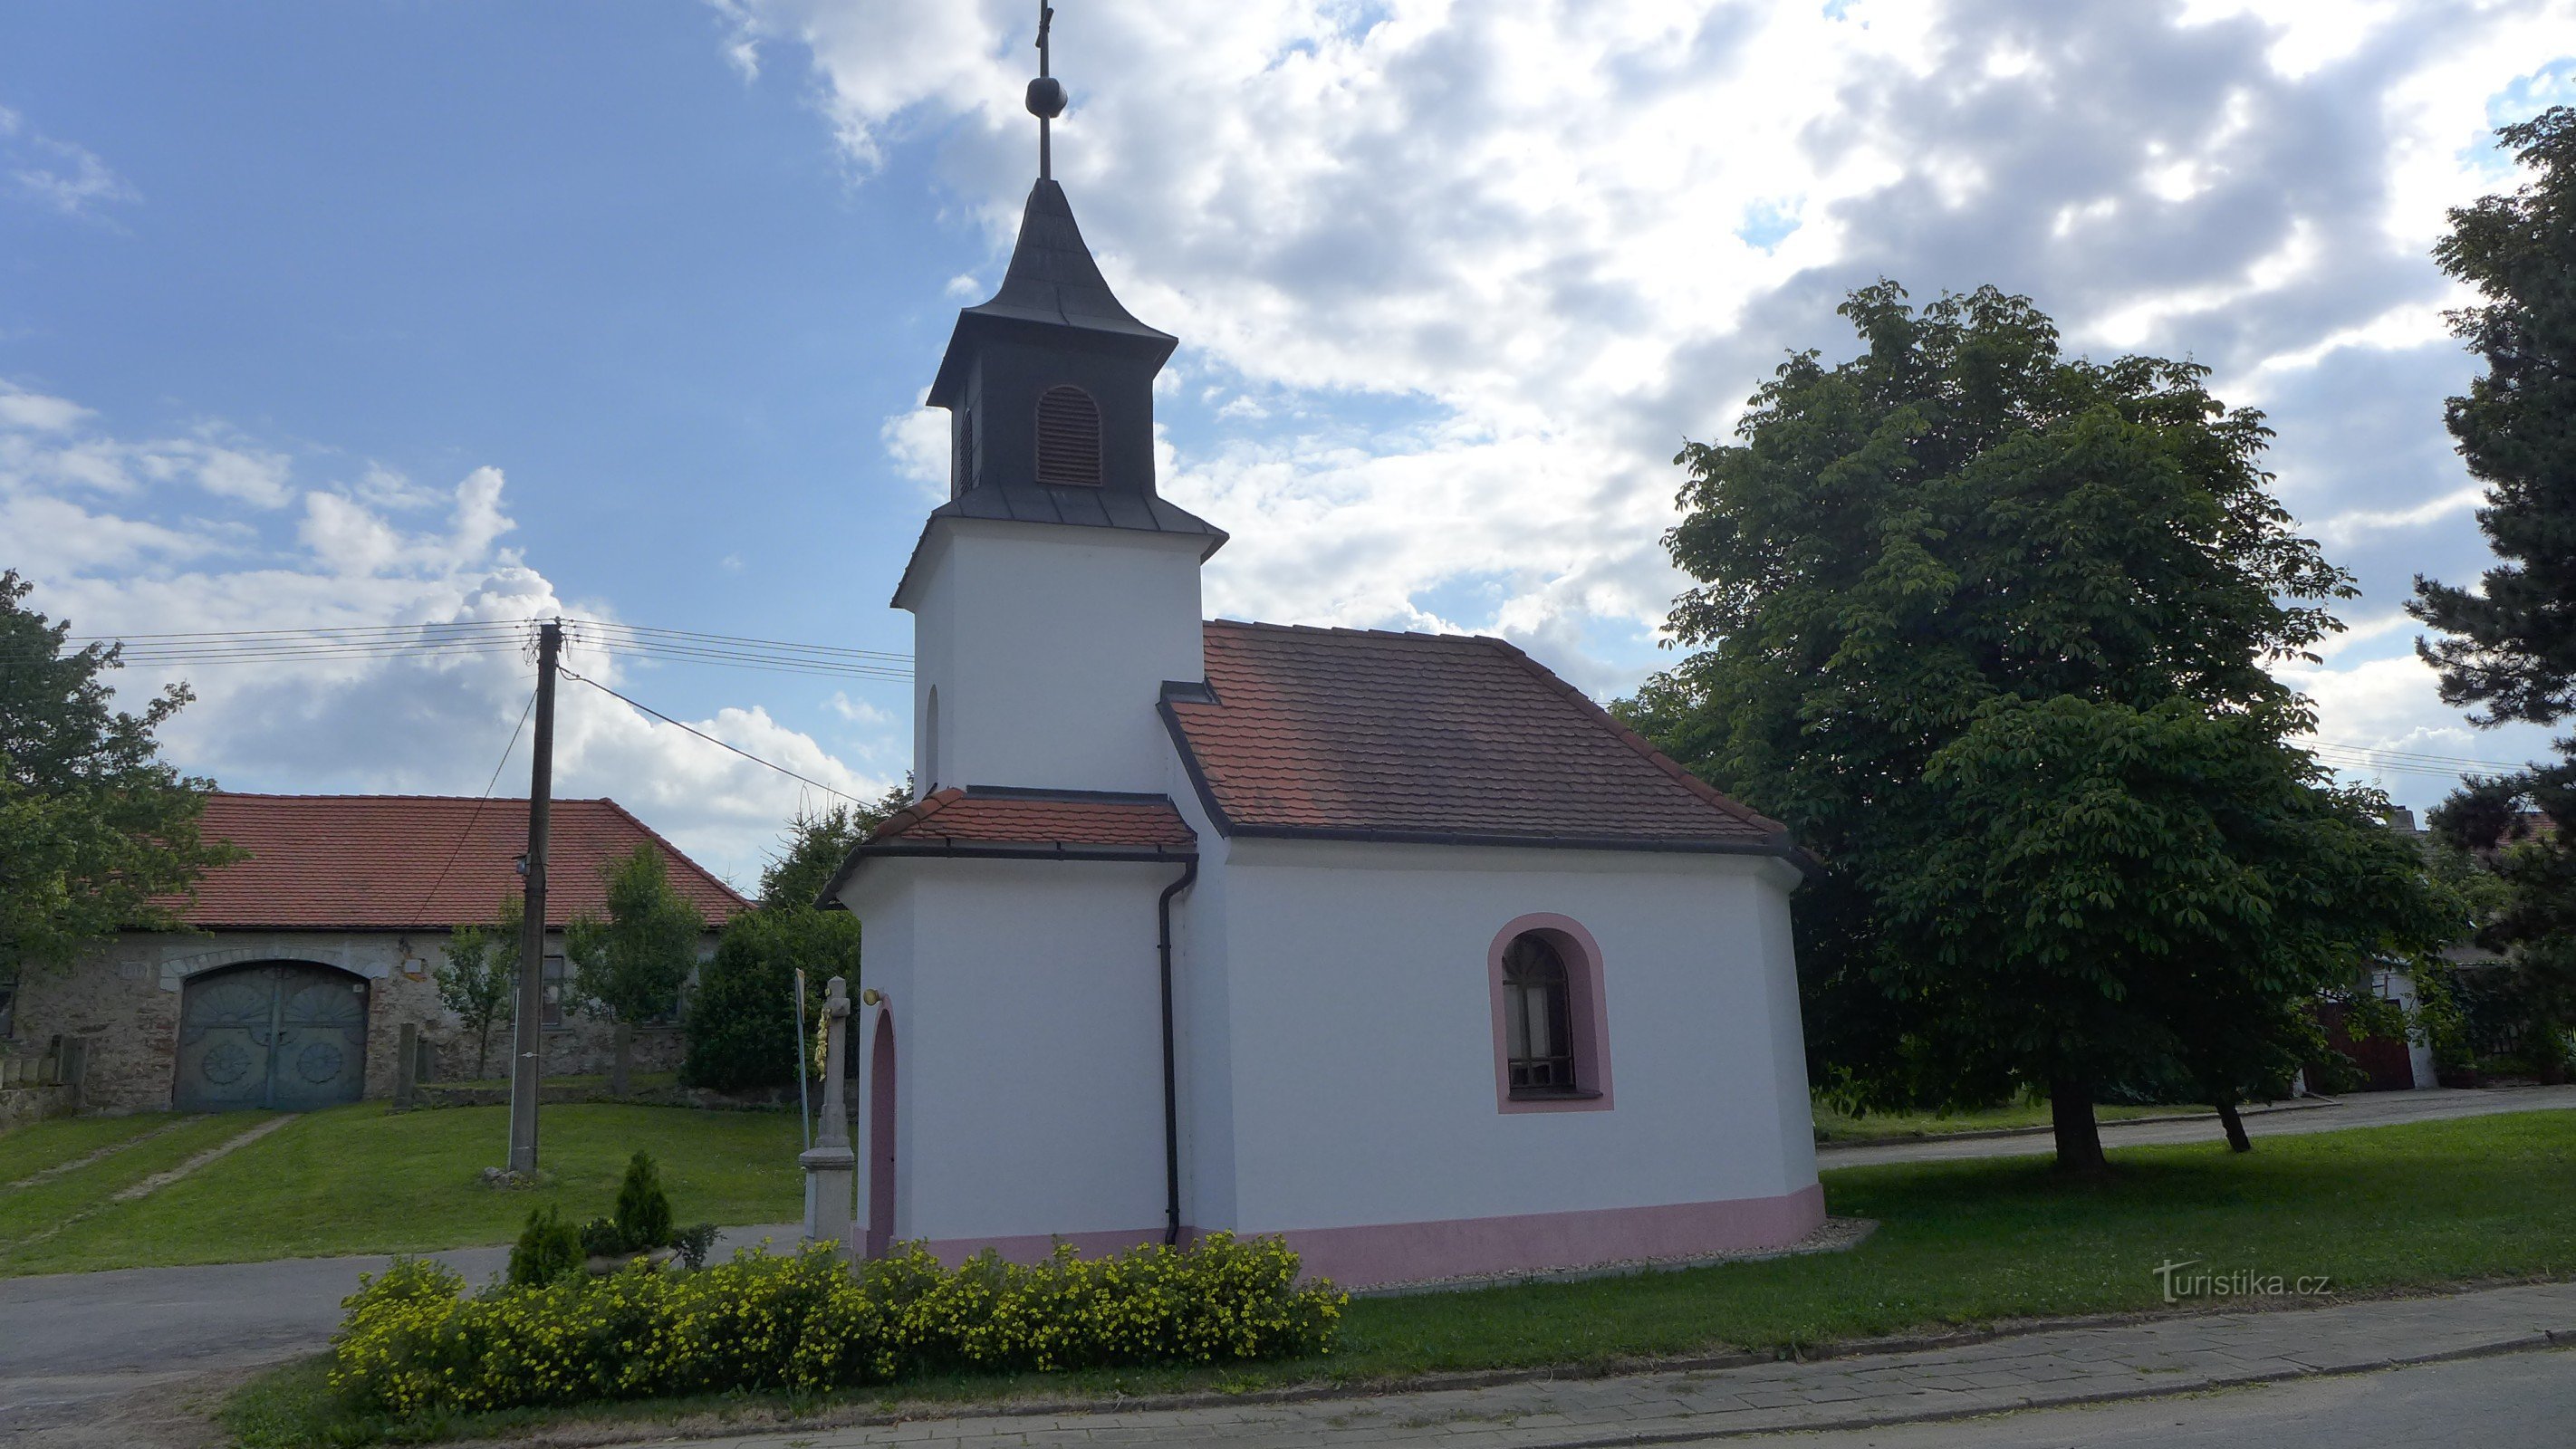 Dolní Vilémovice - Szent István kápolna. Floriana